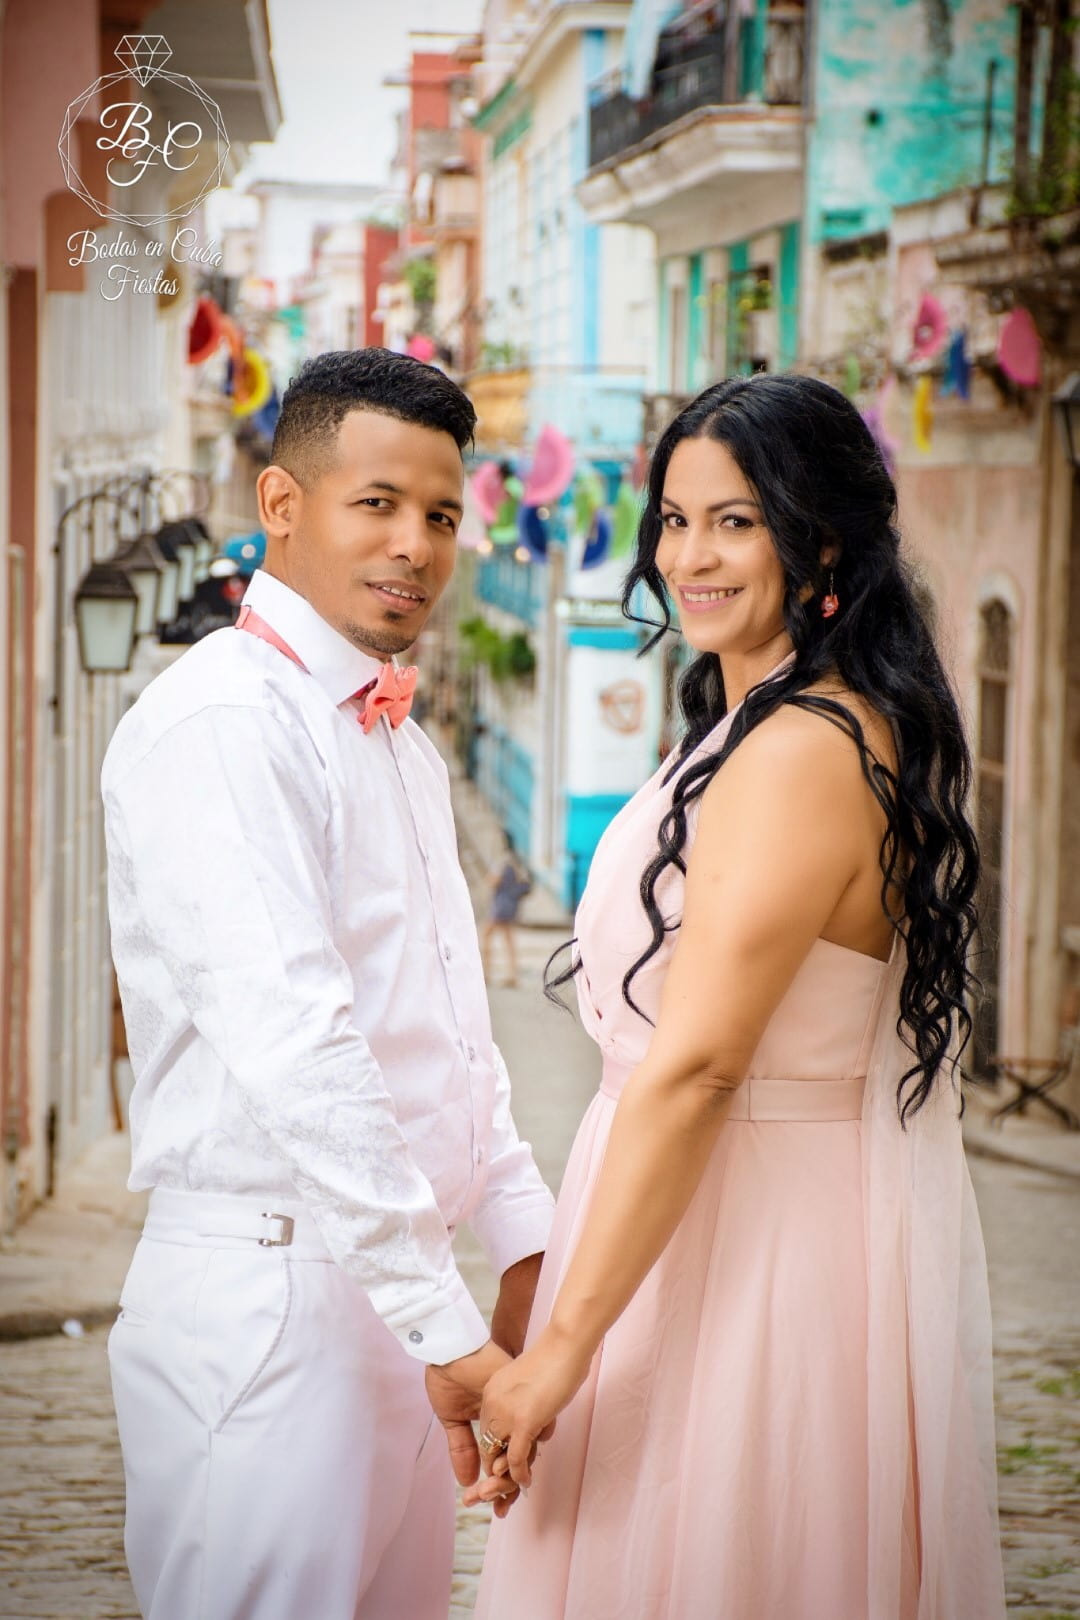 Havana wedding photography studio